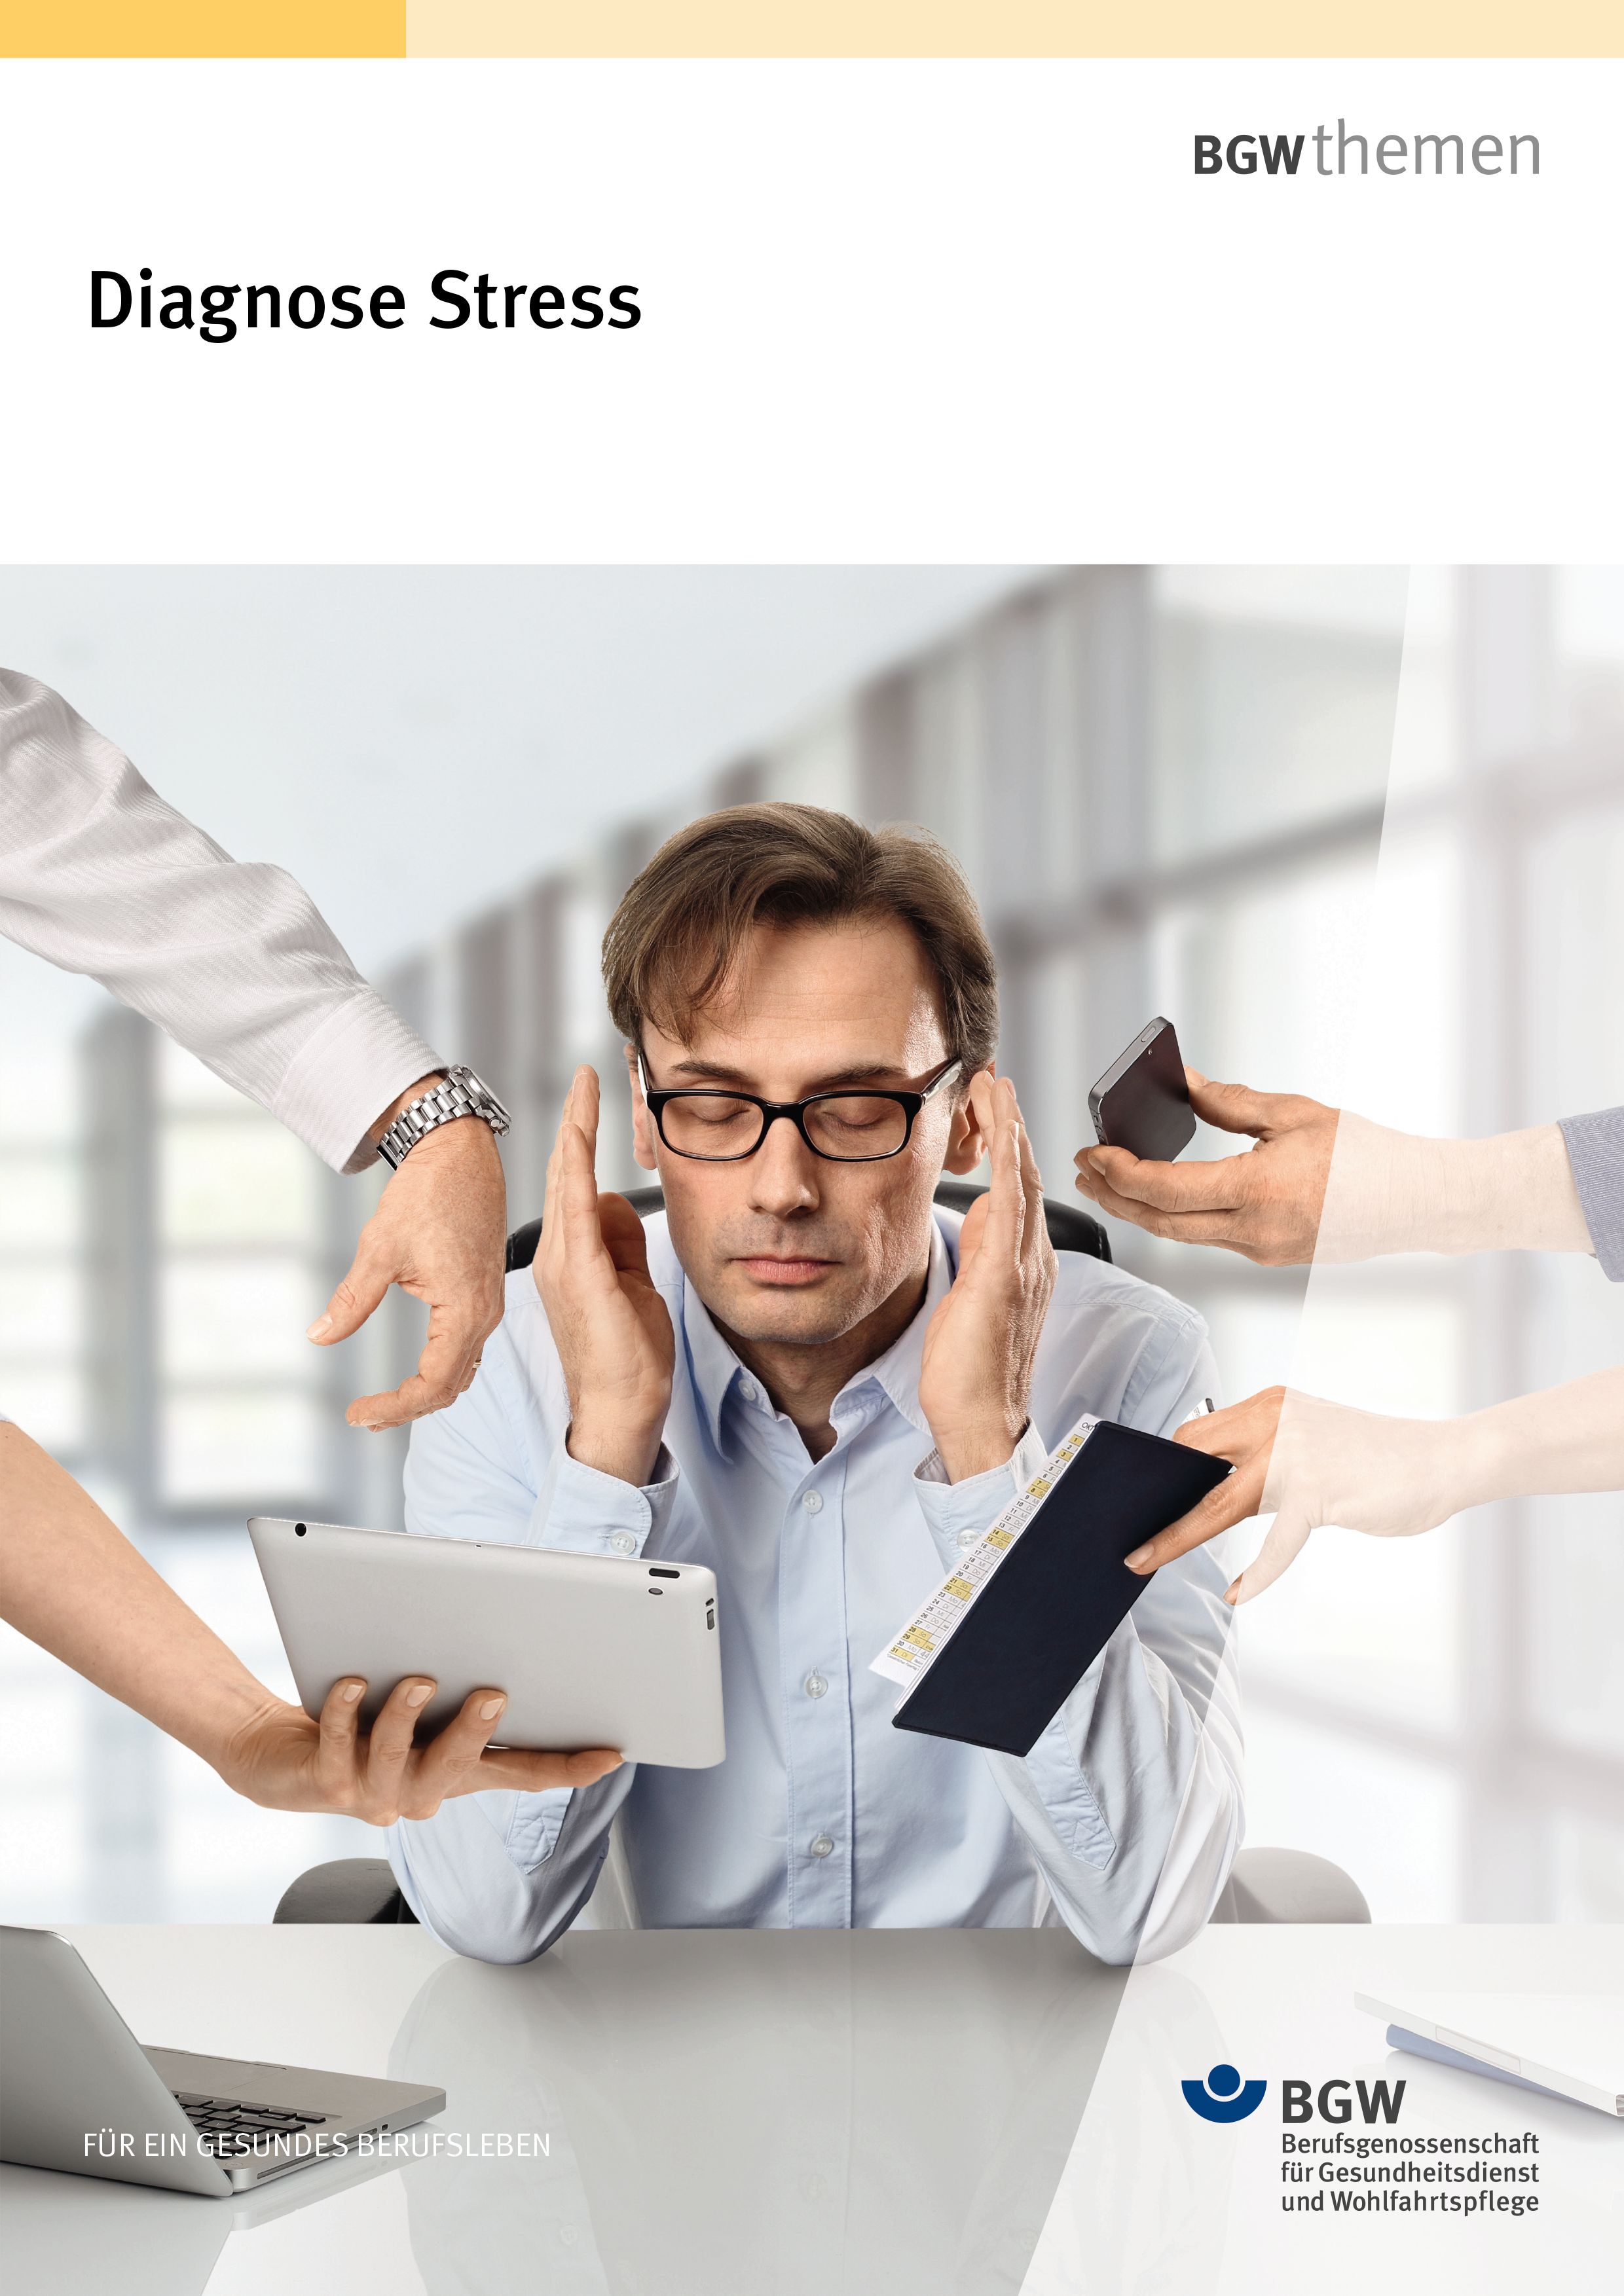 Titel: Diagnose Stress - Mann am Tisch hält sich beide Hände an die Schläfen, vier Hände reichen ihm tablet, Kalender, Smartphone und Uhr